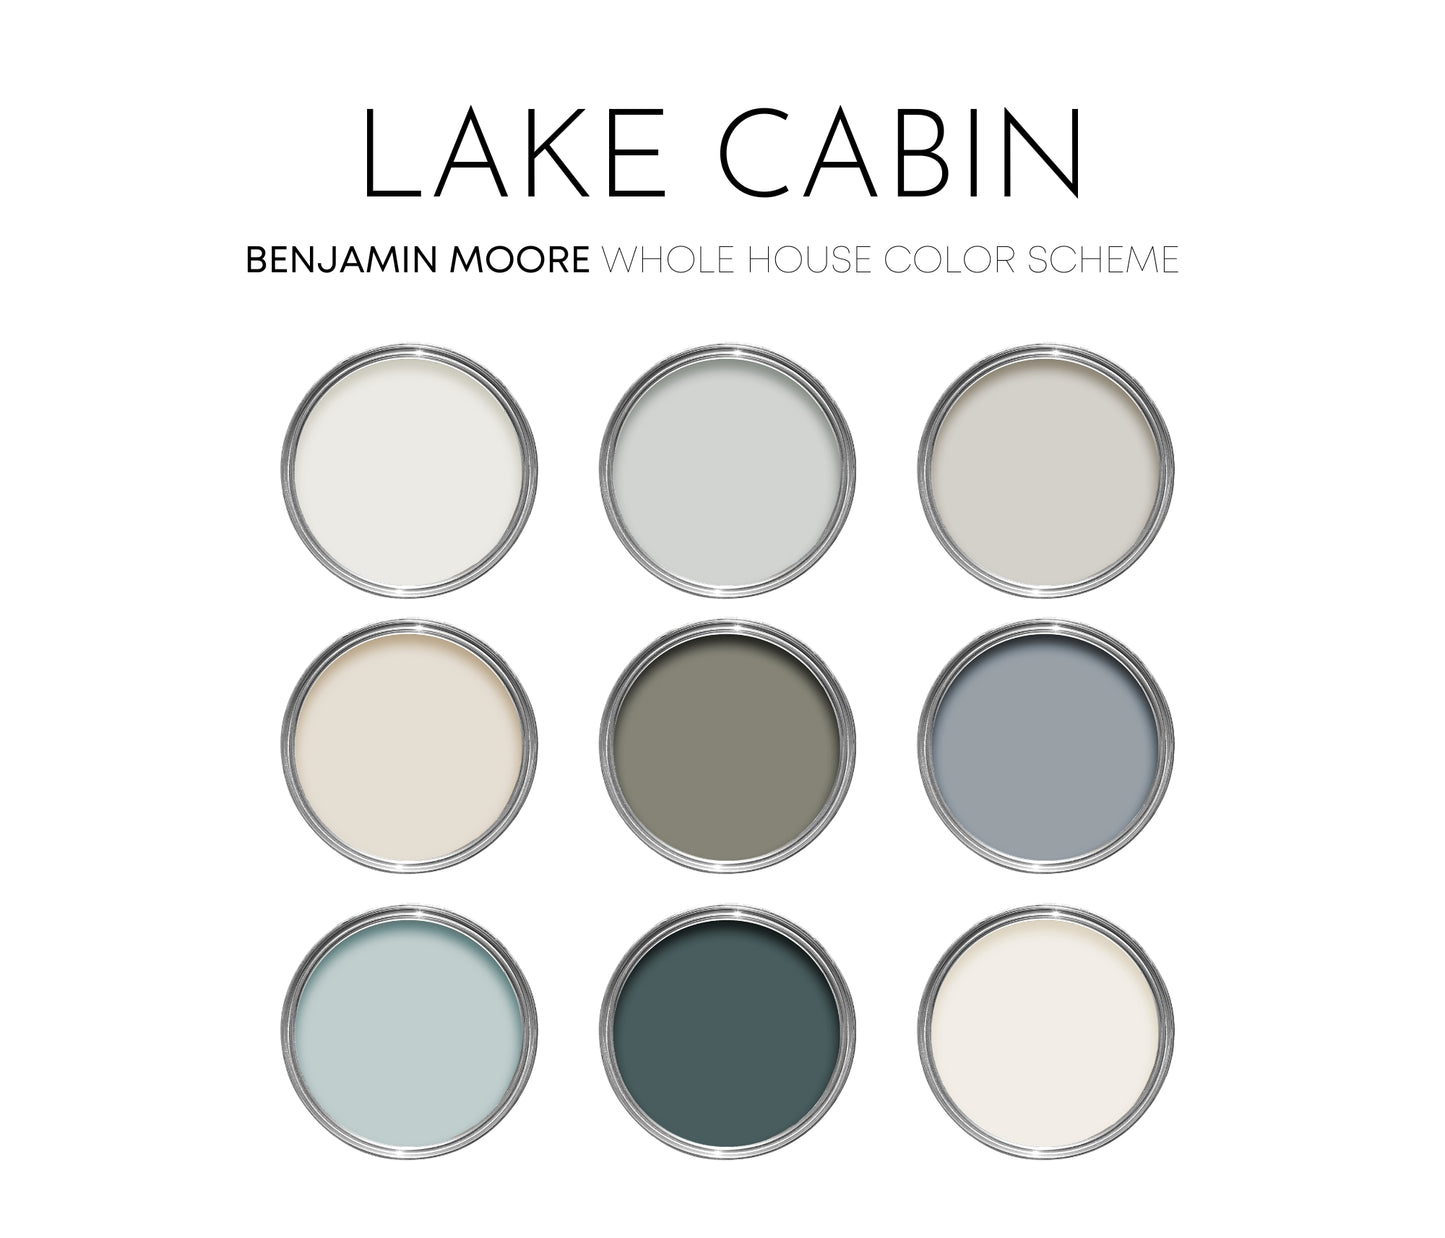 Lake Cabin Benjamin Moore Paint Palette, Calm Neutral Interior Paint Colors, Beach House Coastal Color Scheme